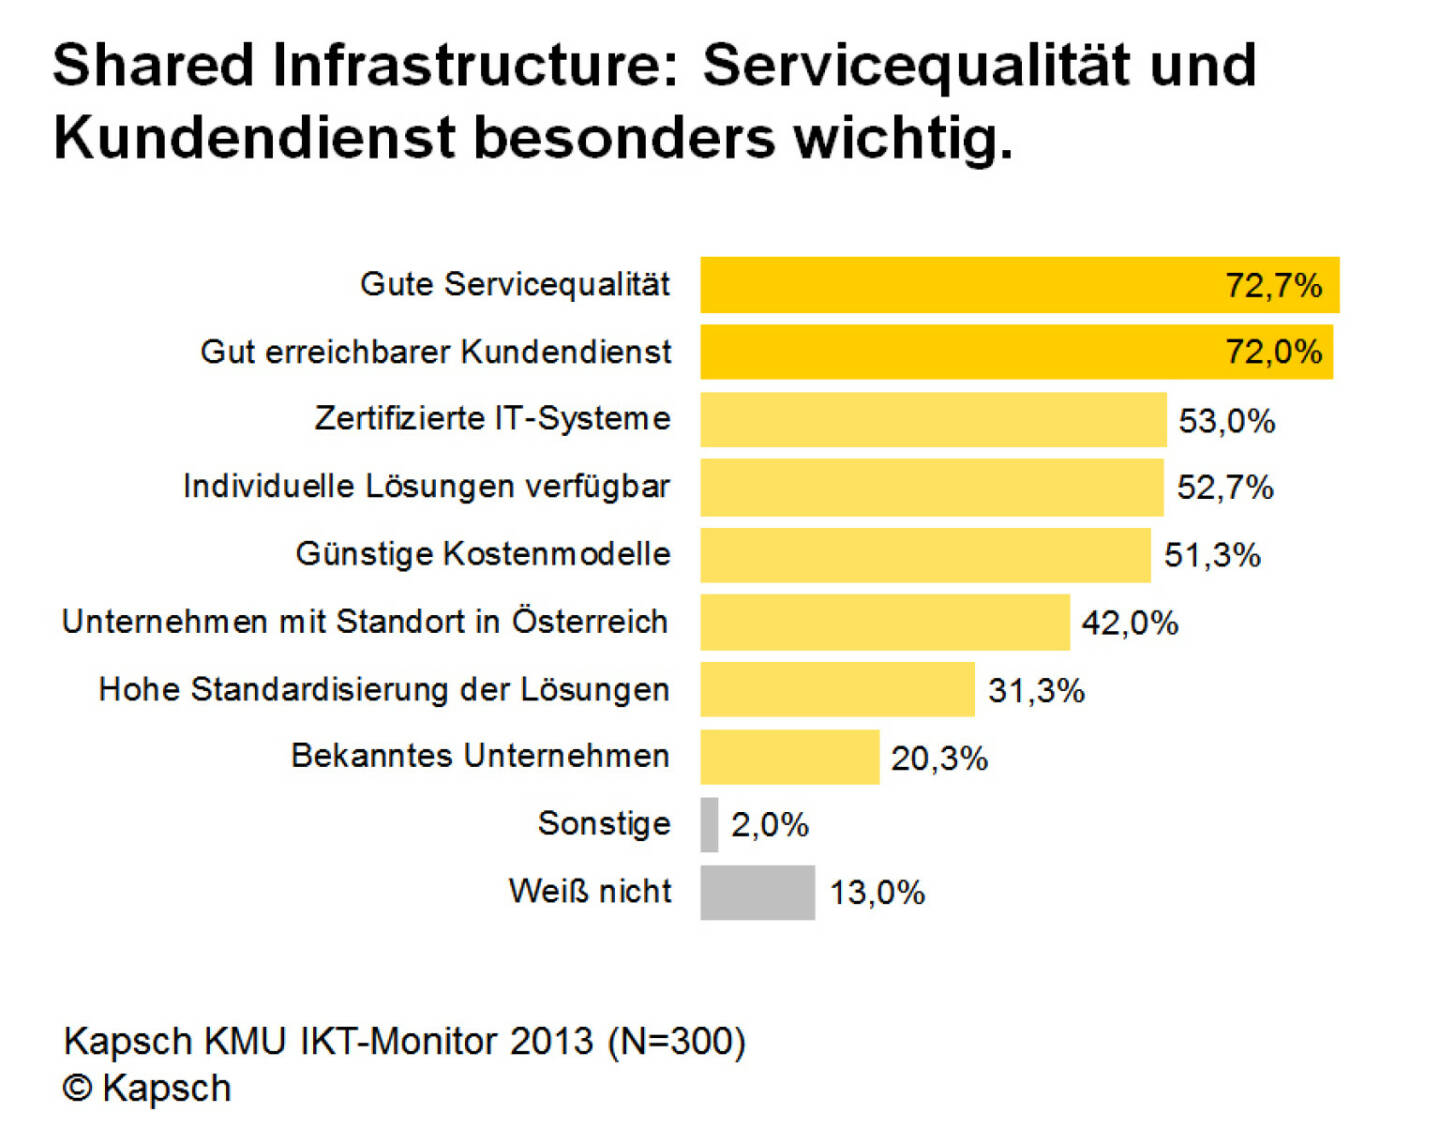 KMU Monitor 2013: Shared Infrastructure: Servicequalität und Kundendienst besonders wichtig (Bild: Kapsch)